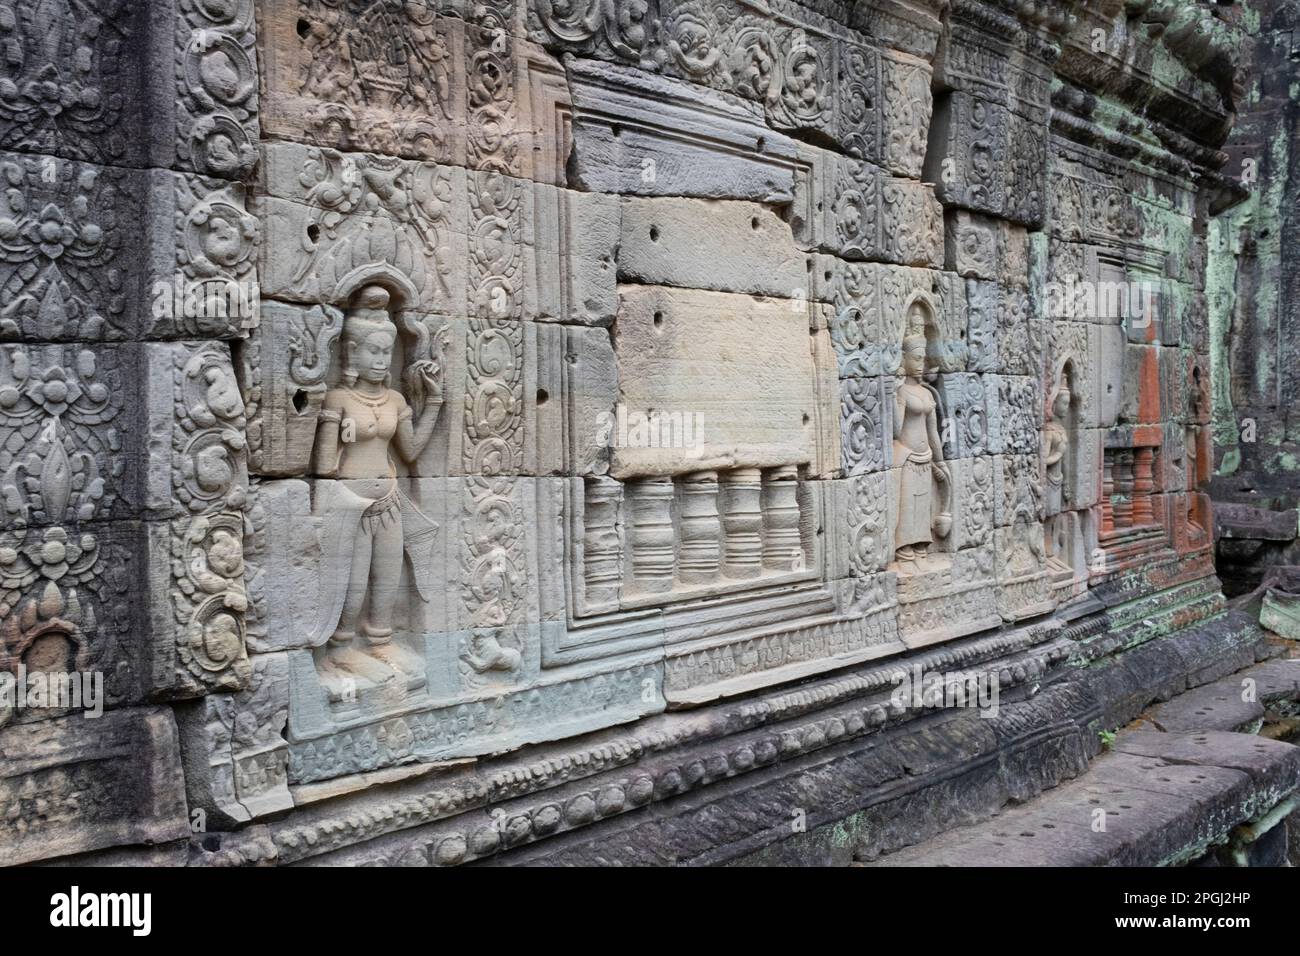 Cambogia: Cambogia: Devata (divinità femminile) adornano le mura di Preah Khan (Tempio della Sacra spada). Preah Khan è stato costruito nel tardo 12th ° secolo (1191) da Jayavarman VII e si trova appena a nord di Angkor Thom. Il tempio fu costruito sul luogo della vittoria di Jayavarman VII sui Chams invasori nel 1191. Era il centro di una grande organizzazione, con quasi 100.000 funzionari e funzionari. In un tempo era un'università buddista. La divinità primaria del tempio è la boddhisatva Avalokiteshvara, nella forma del padre di Jayavarman. Foto Stock